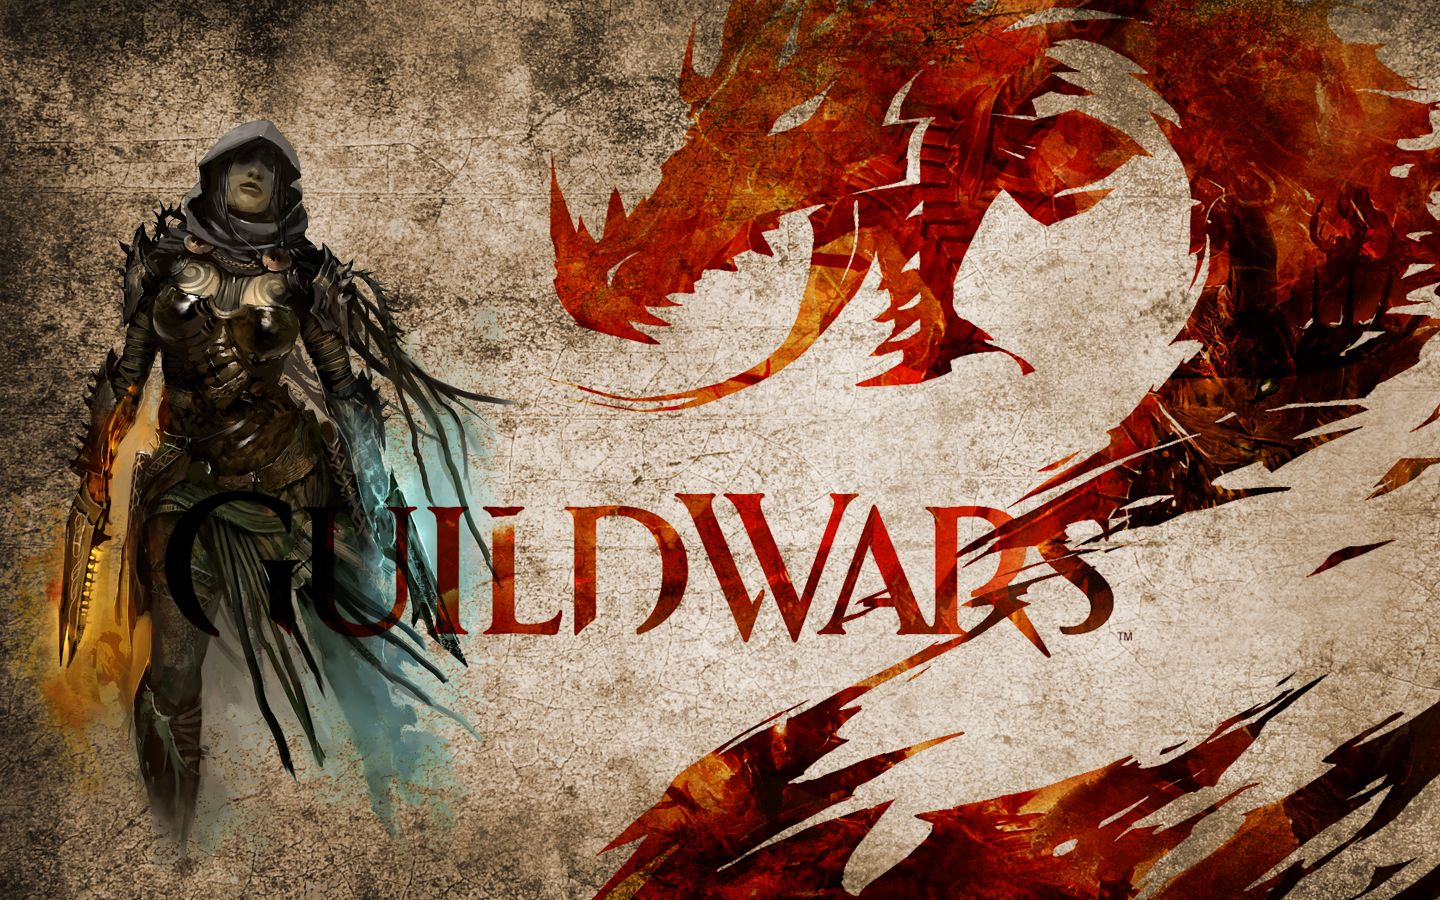 Descarga gratuita de fondo de pantalla para móvil de Guild Wars 2, Guild Wars, Videojuego.